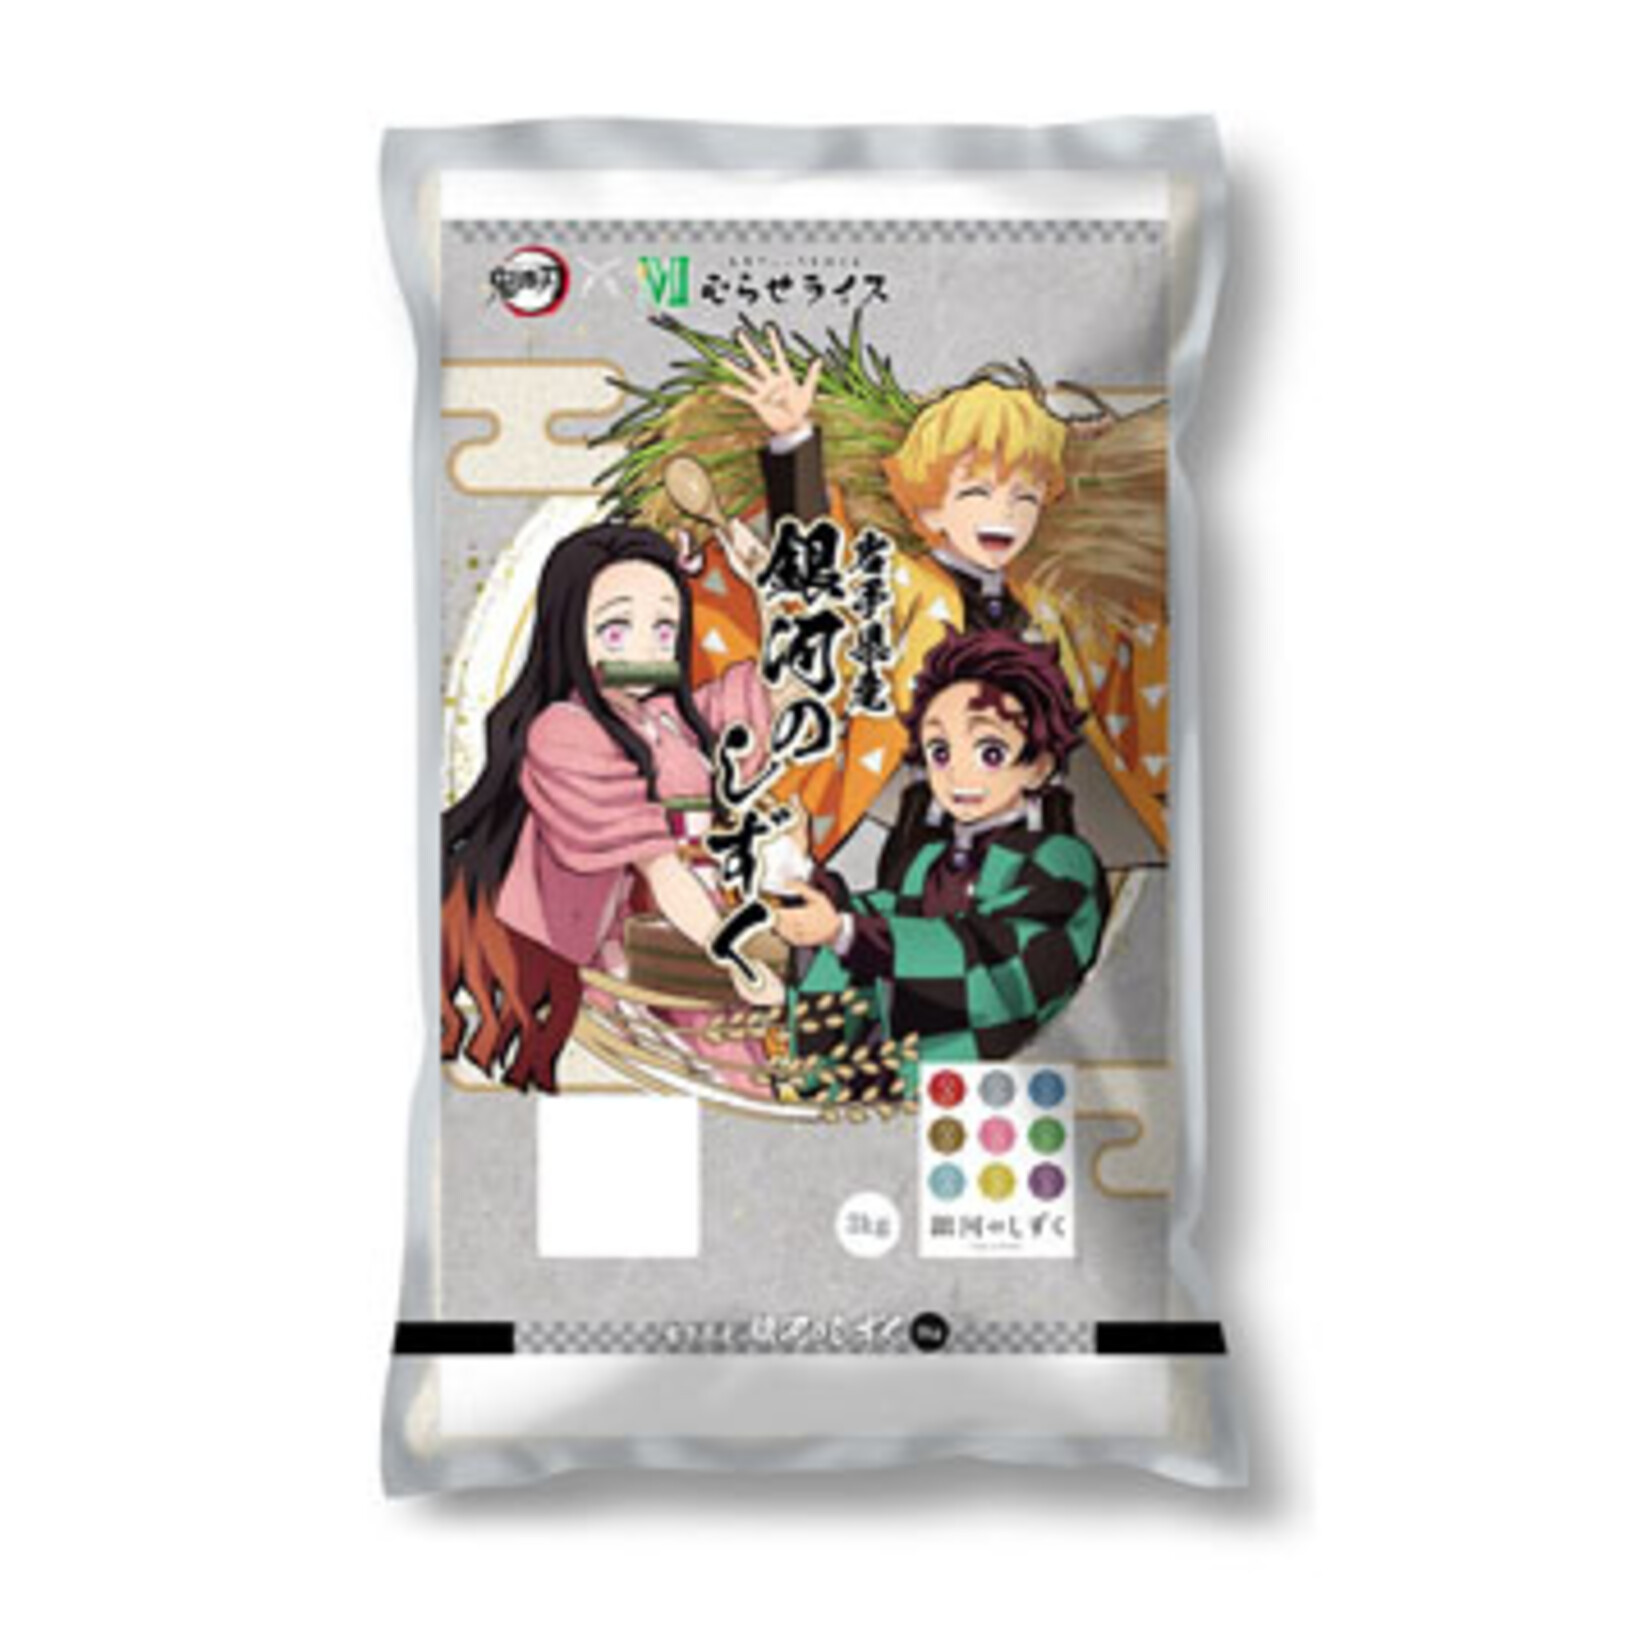 Rice - 4 year aged Short-Grain Rice - "Kimetsu" Iwate Ginga no Shizuku 6.6lbs bag